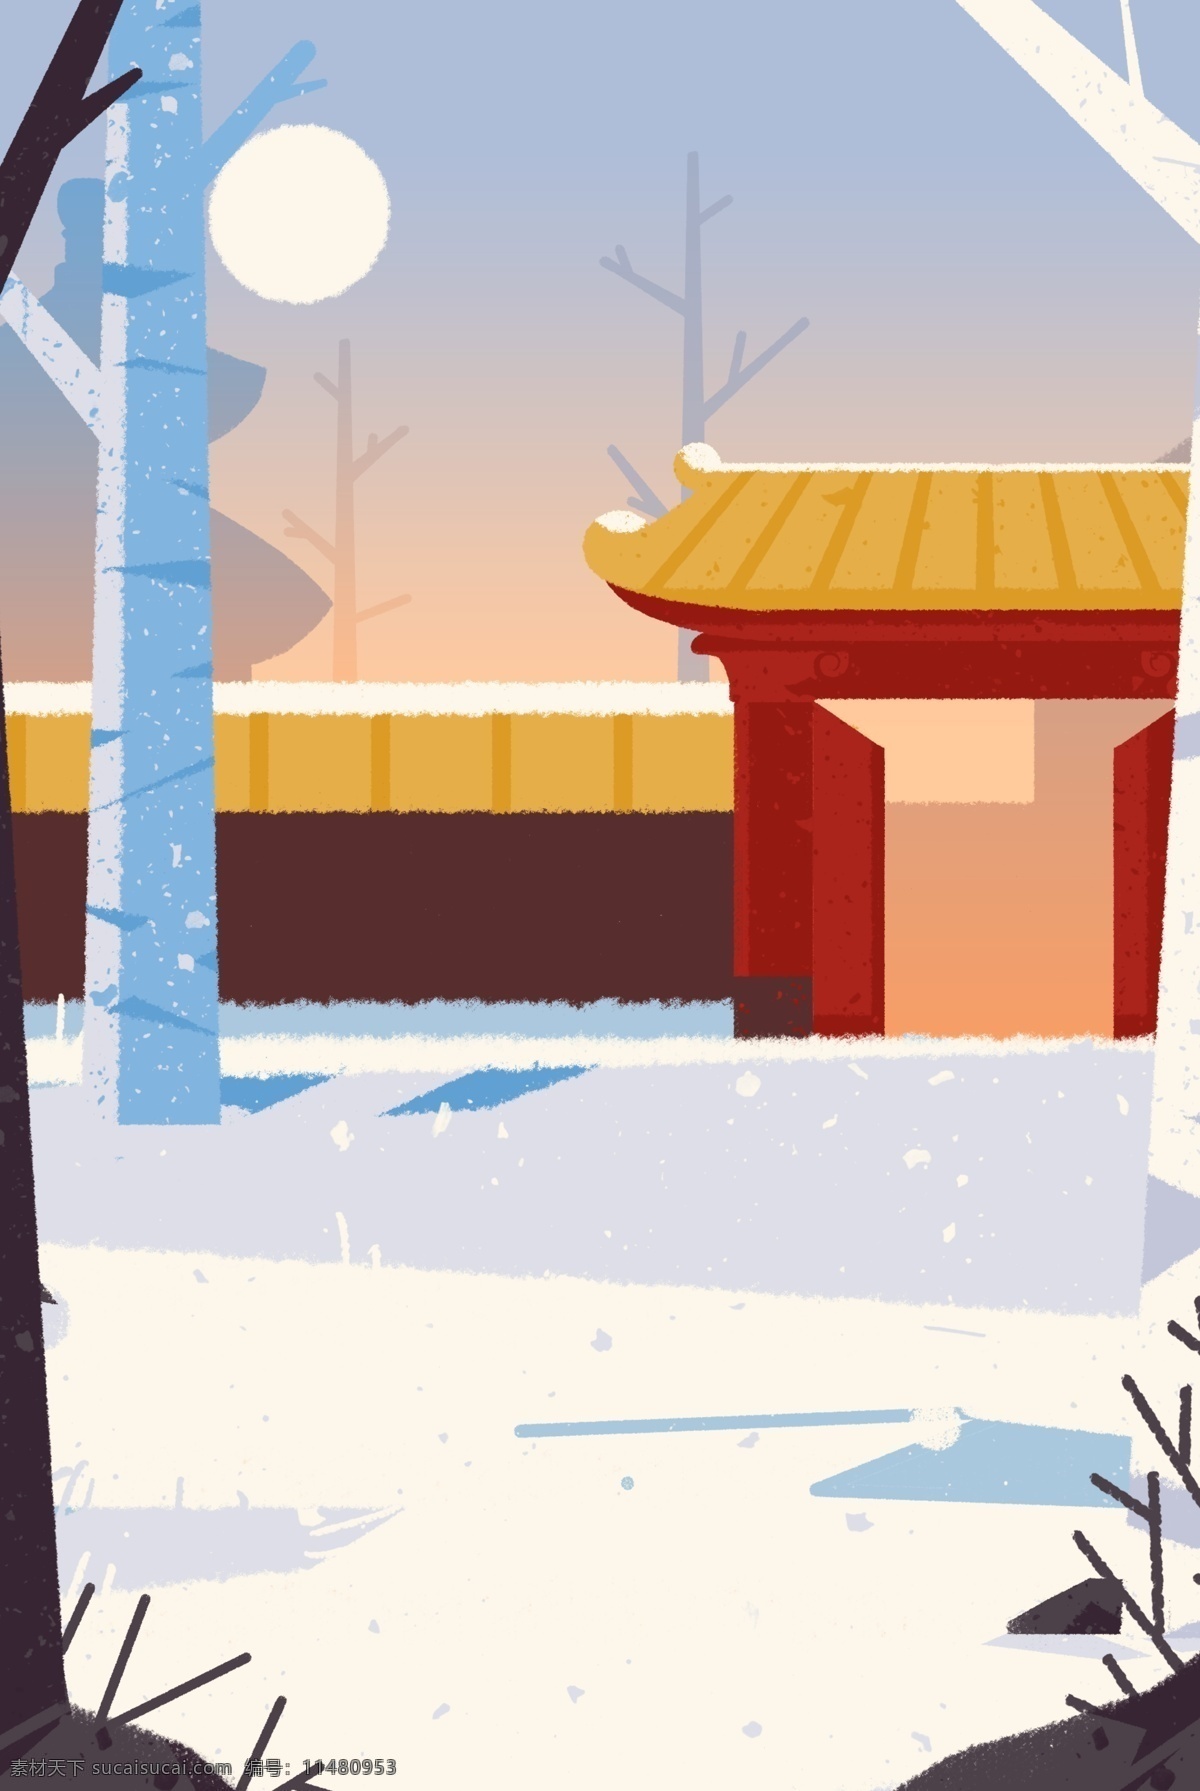 彩色 创意 冬季 春节 背景 雪地 白桦林 建筑 房屋 月亮 雪景 风景 景色